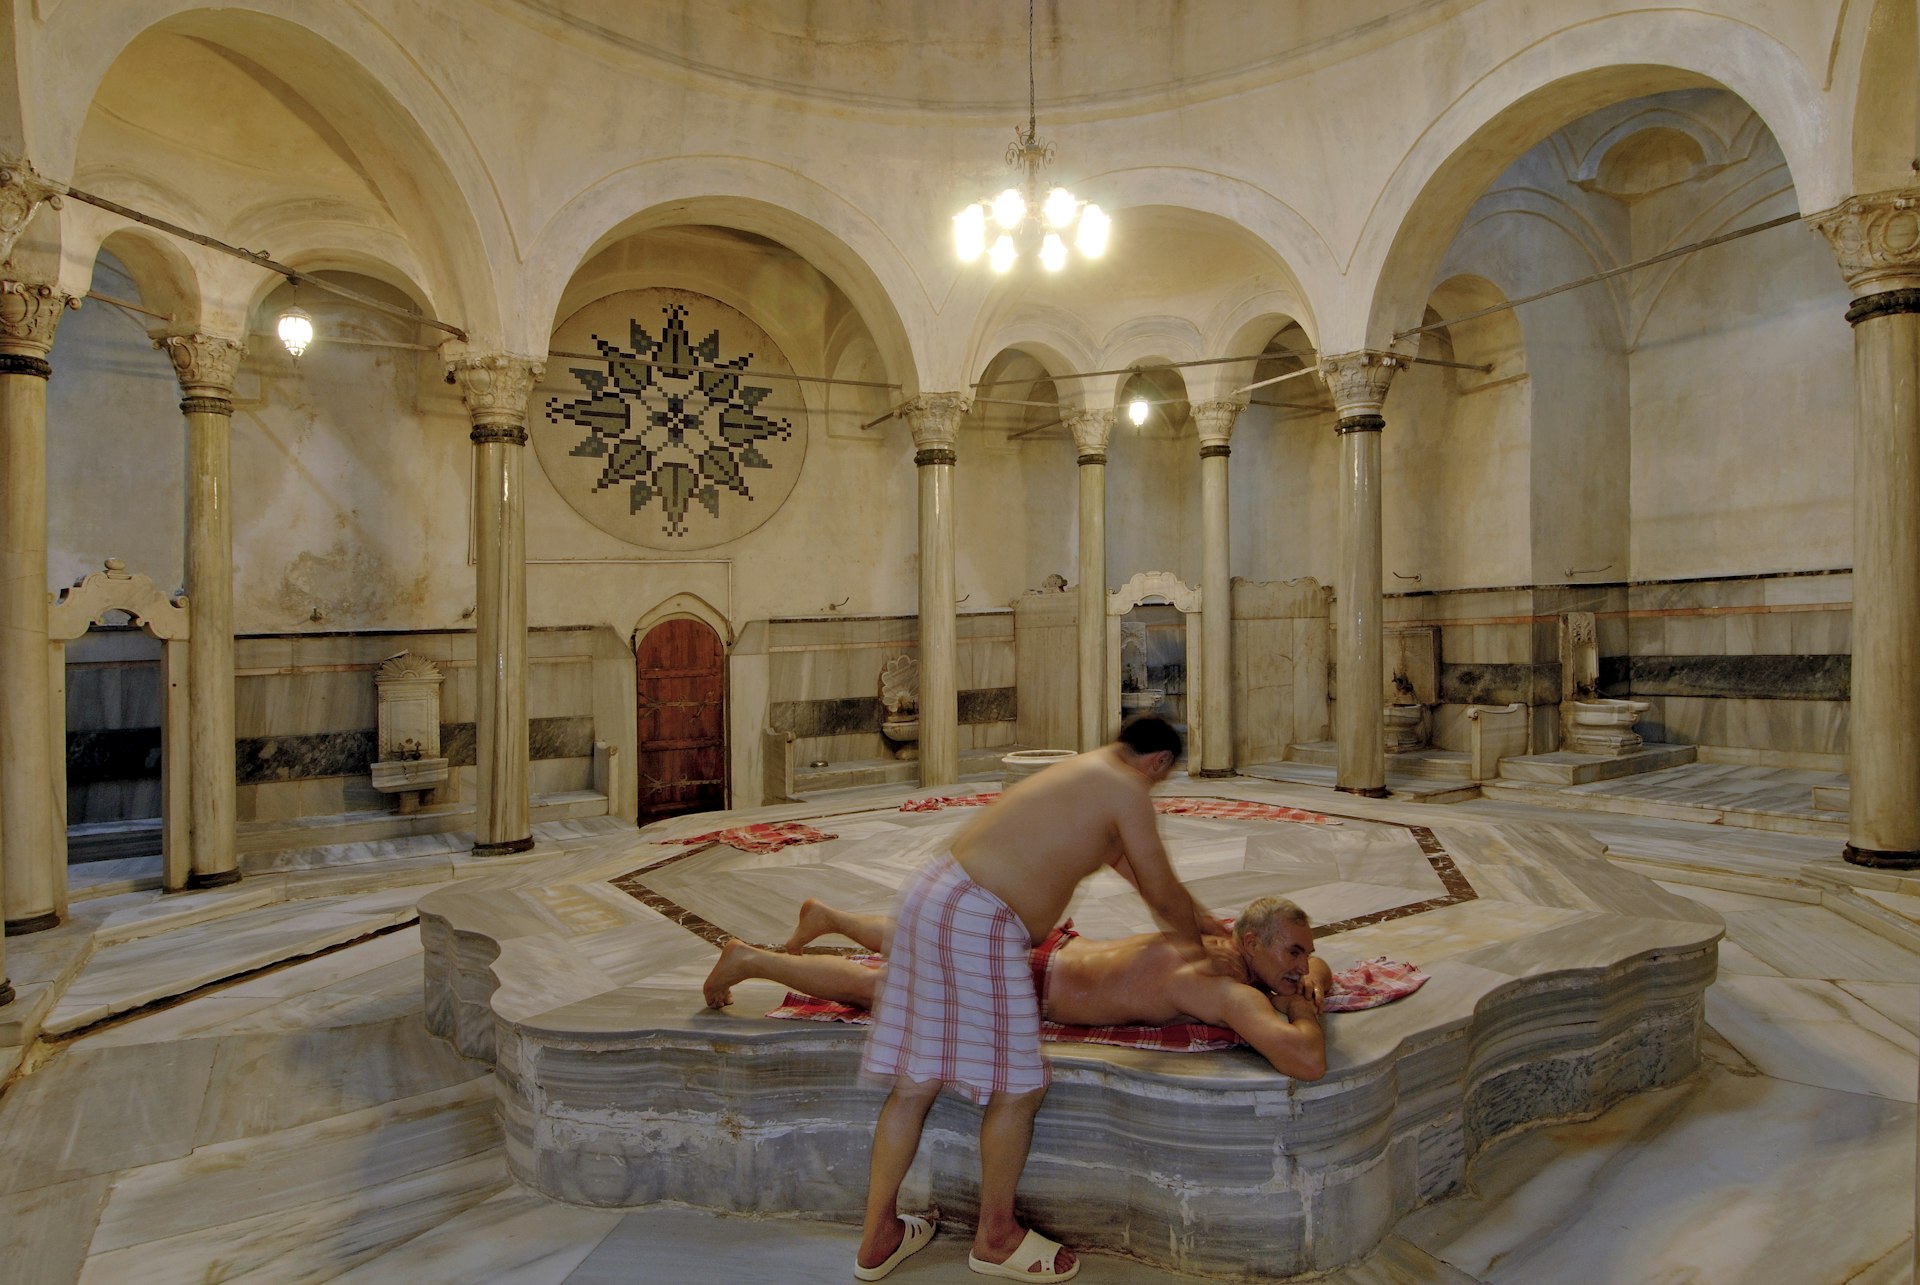 Cagaloglu Hammam (Turkish baths) in Istanbul